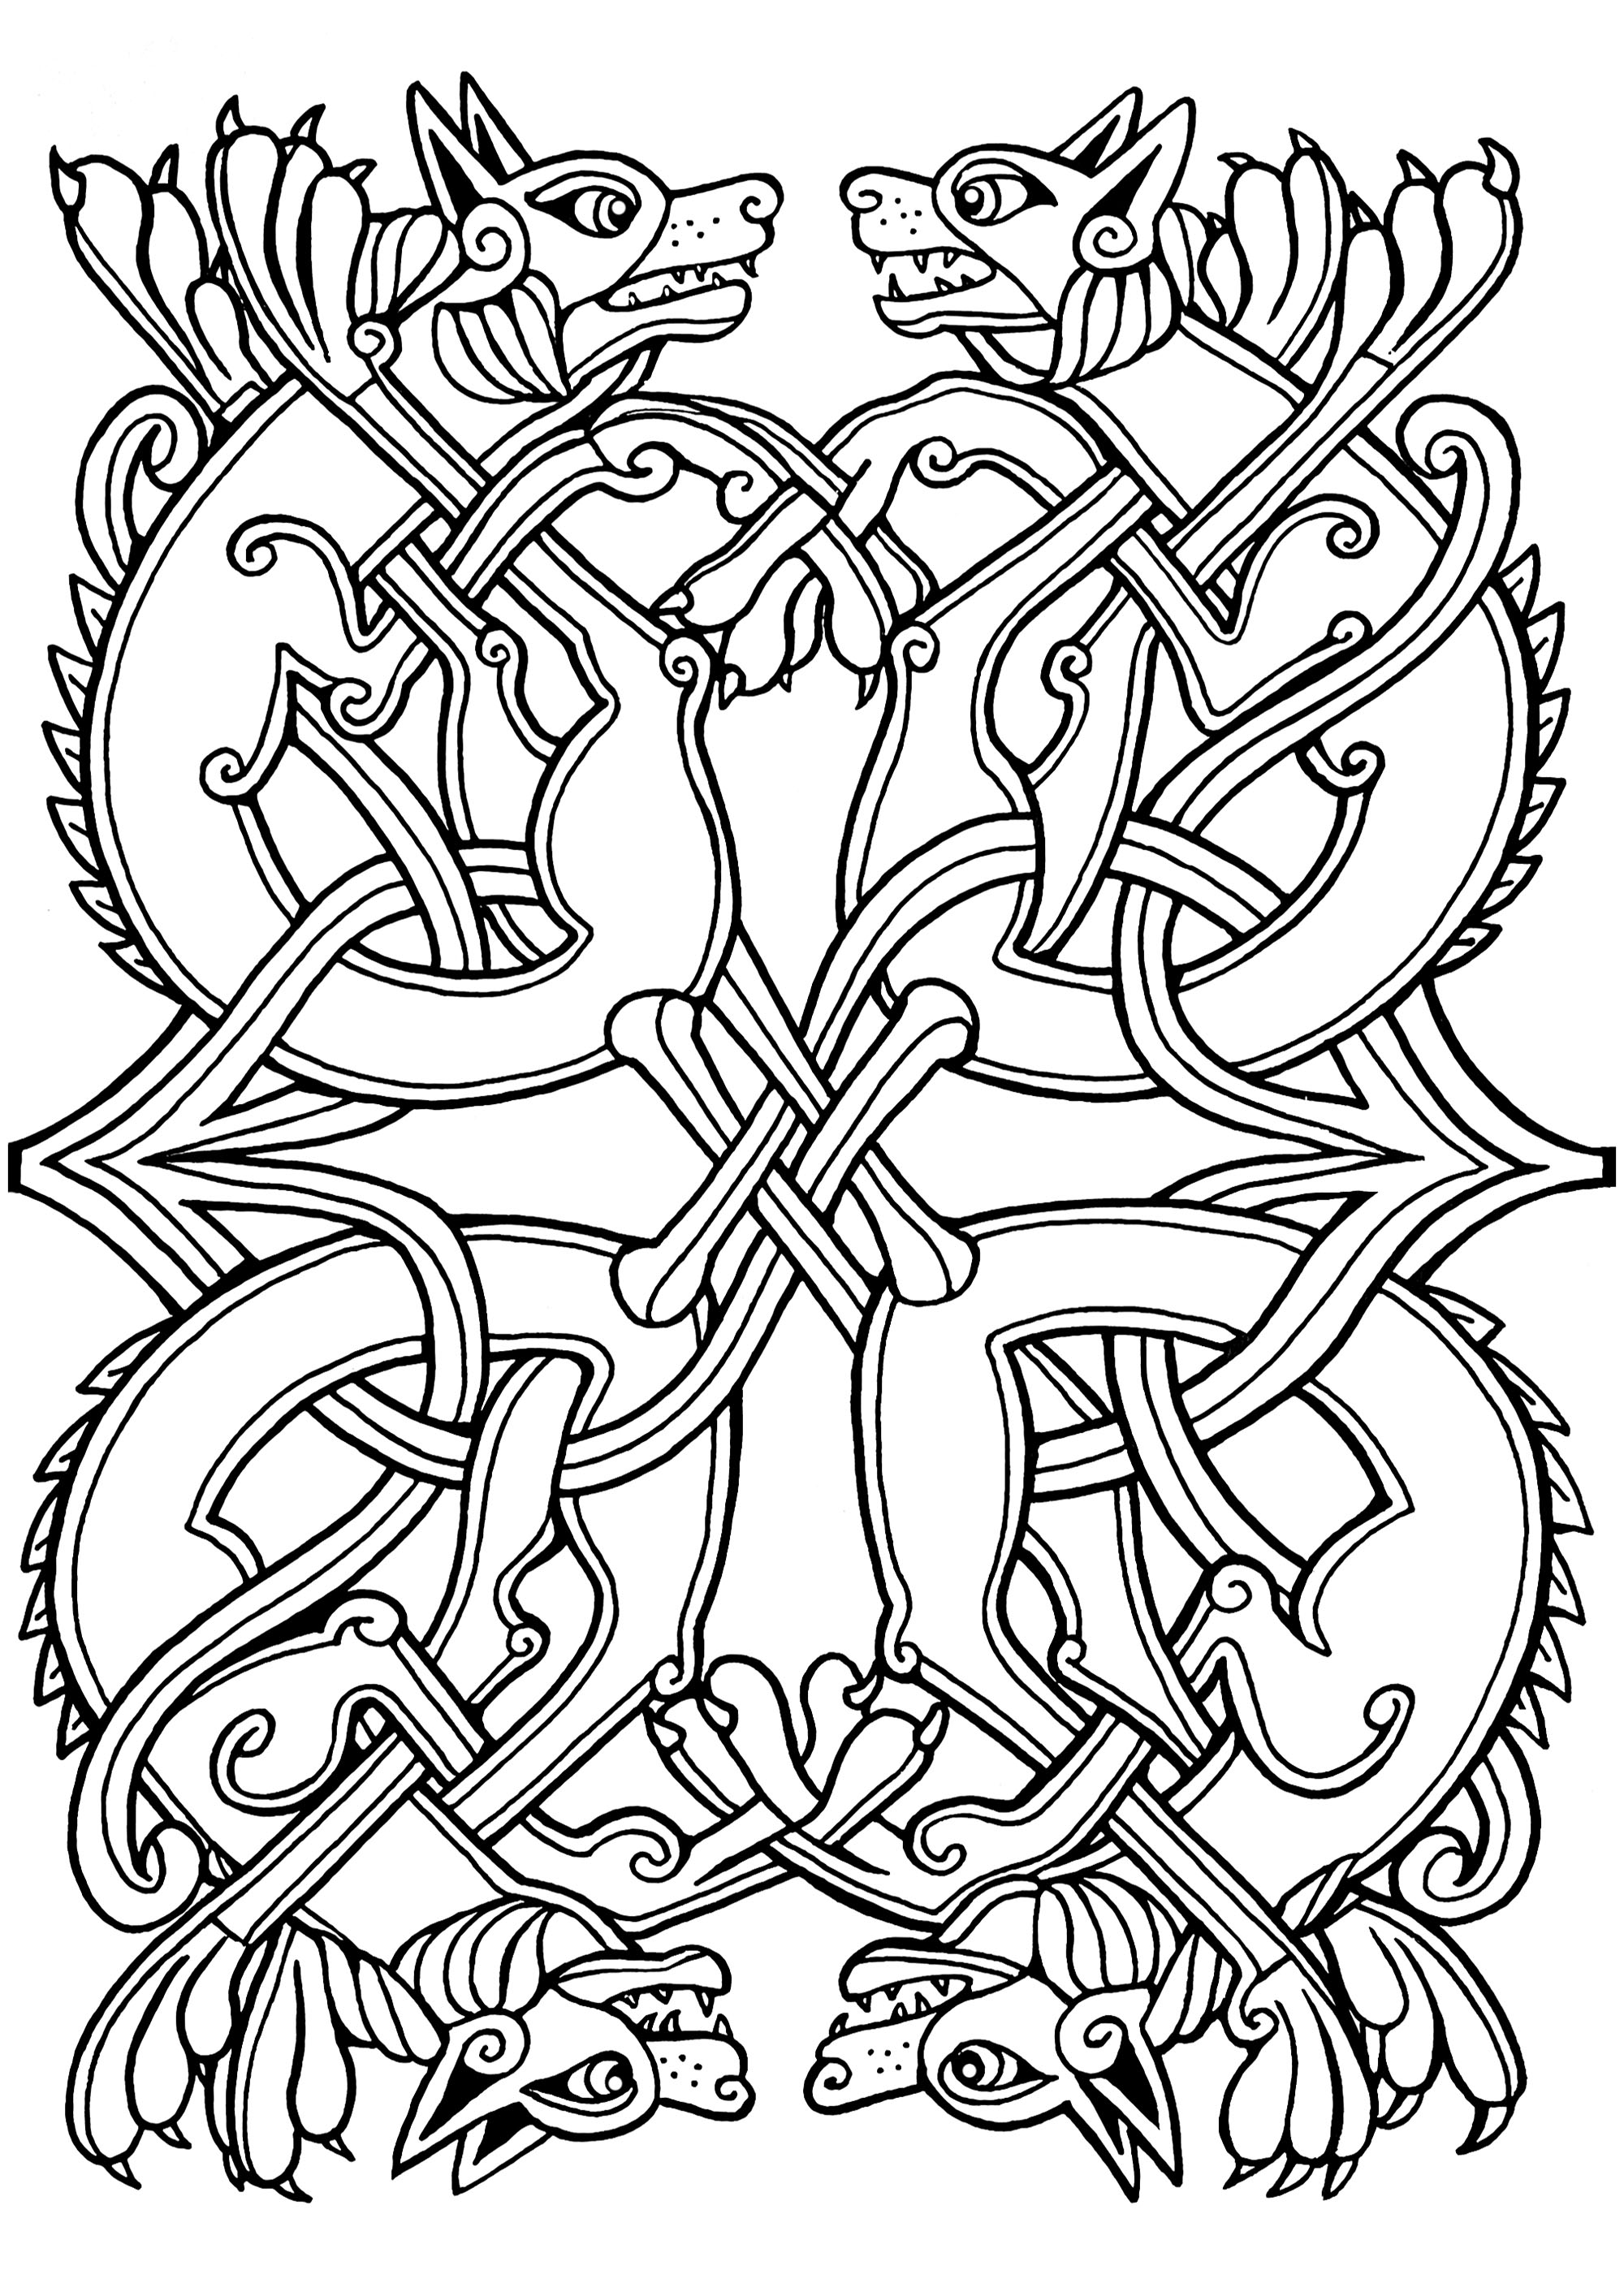 Dessin celtique représentant des chiens, avec des motifs celtiques entrelacés. Cette illustration ressemble à celles qu'on peut retrouver dans des manuscrits médiévaux tels que The Book of Kells.